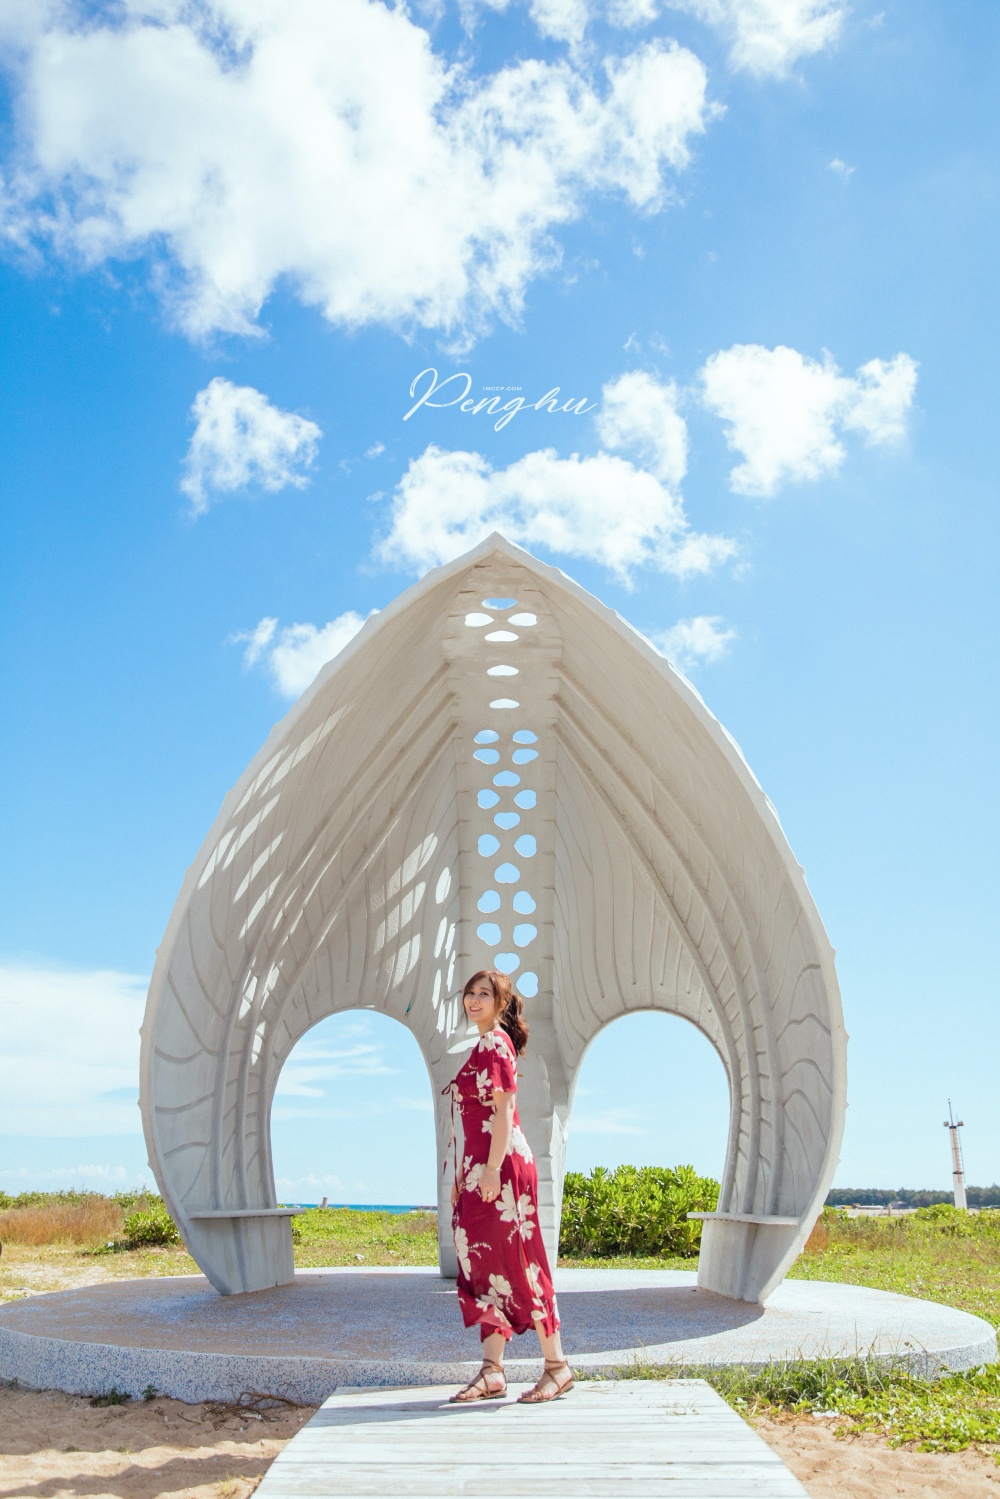 澎湖最新景點！全台首座純白「貝殼教堂」。小美人魚純白貝殼座椅